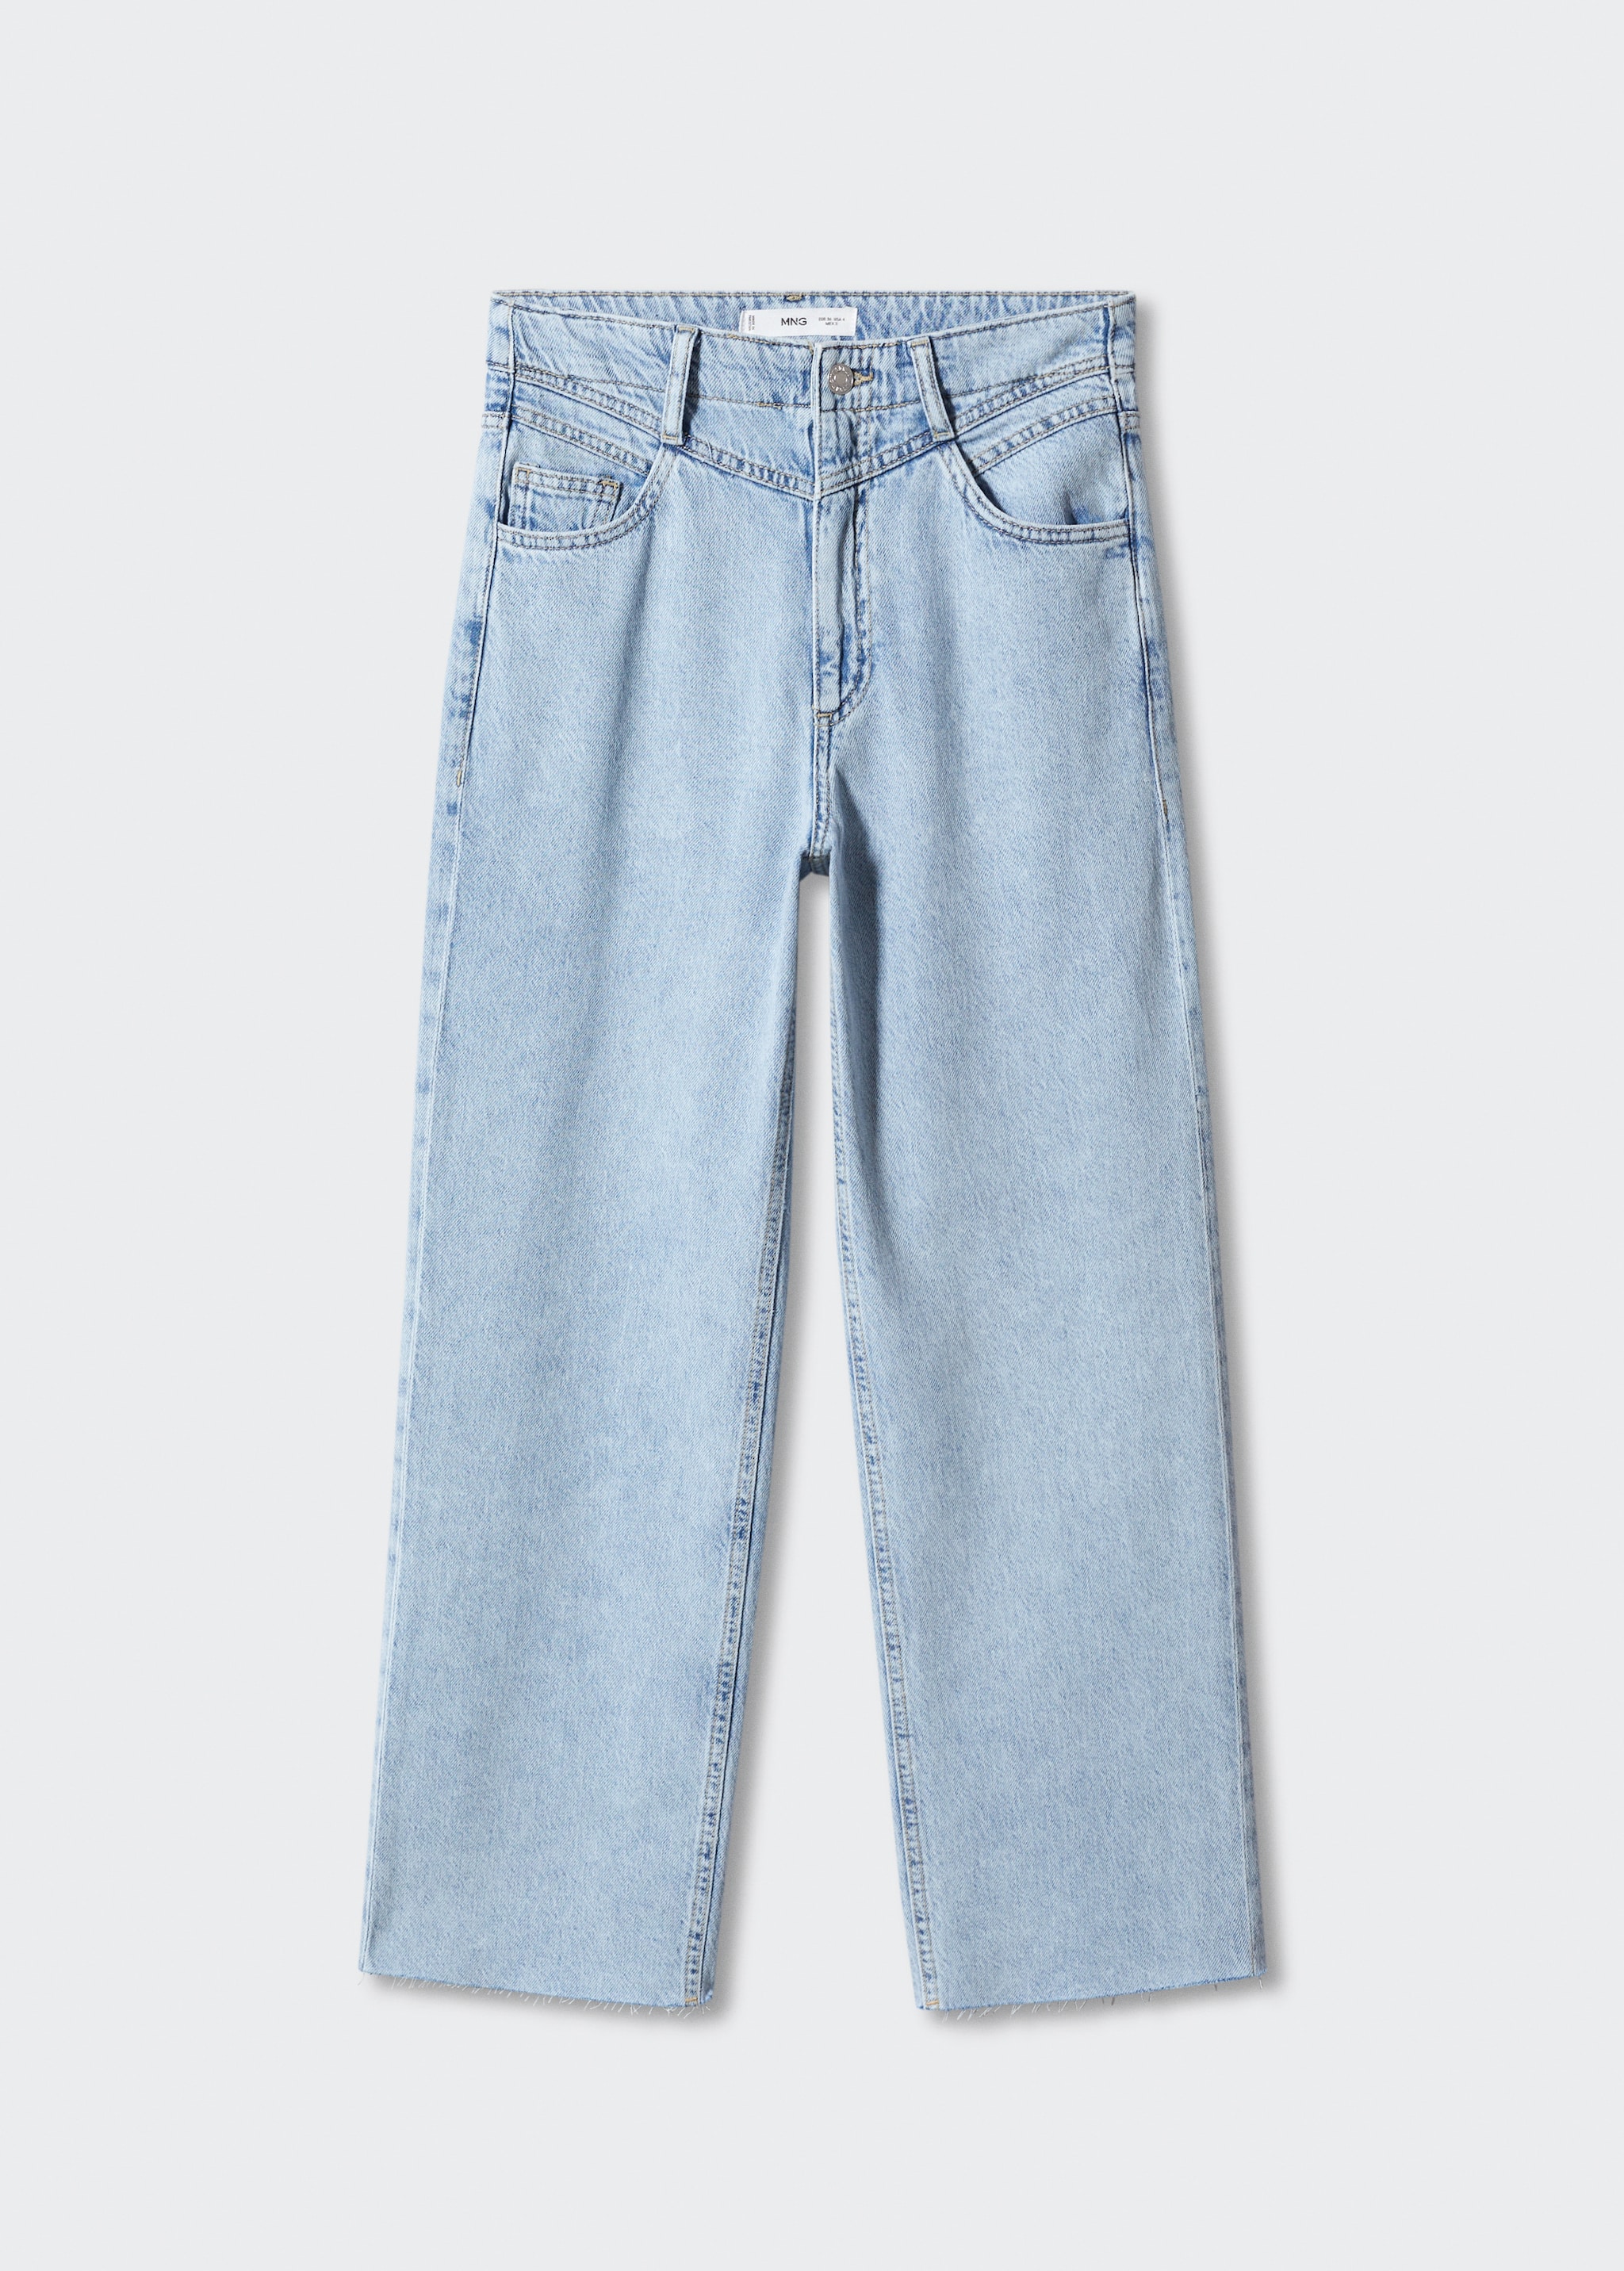 Jeans wideleg bajo deshilachado - Artículo sin modelo